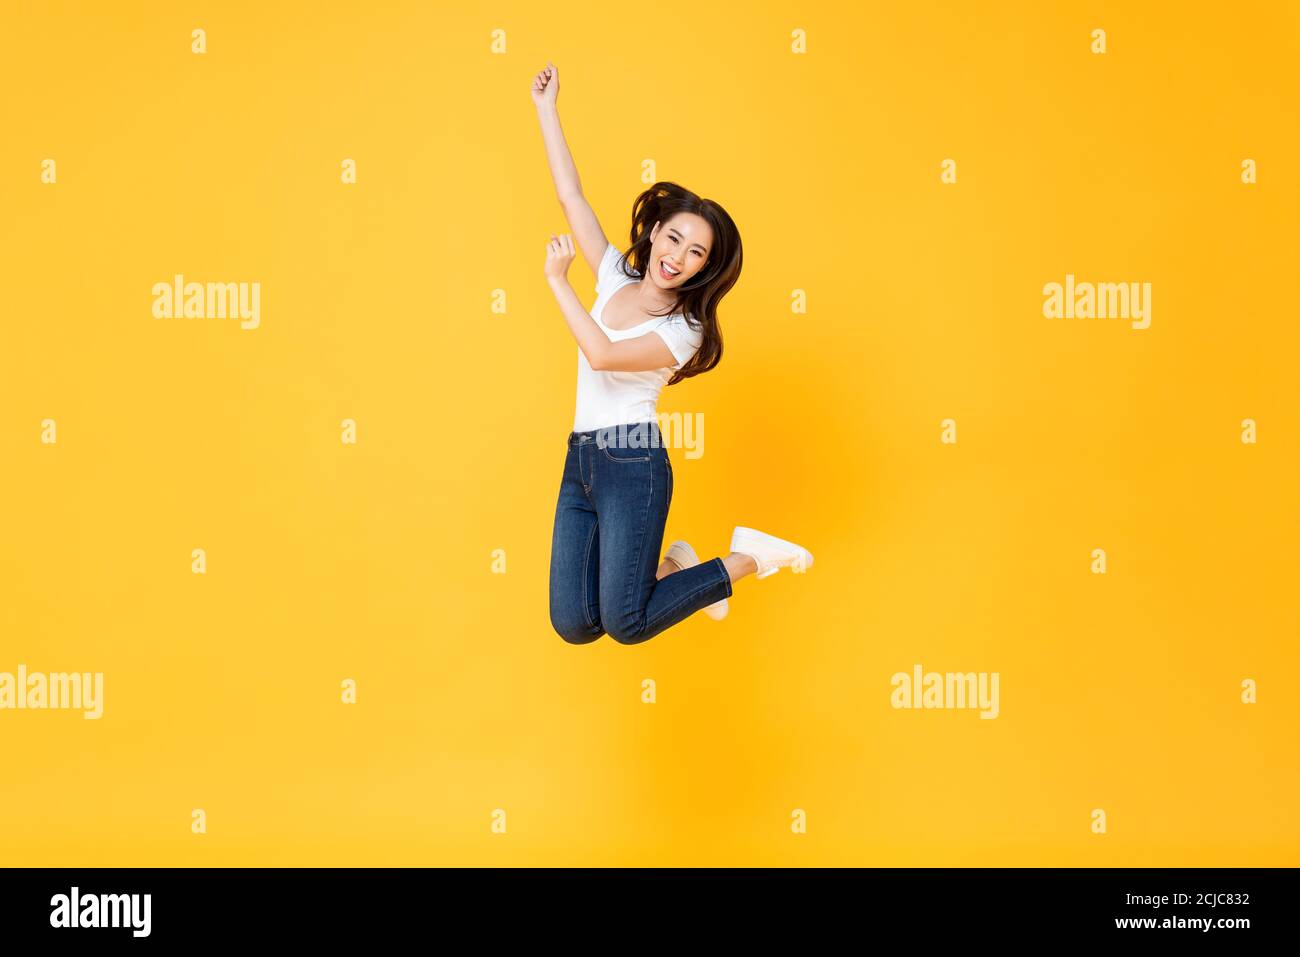 Retrato completo de una mujer asiática bonita sonriendo y saltando en medio del aire aislado sobre fondo amarillo Foto de stock